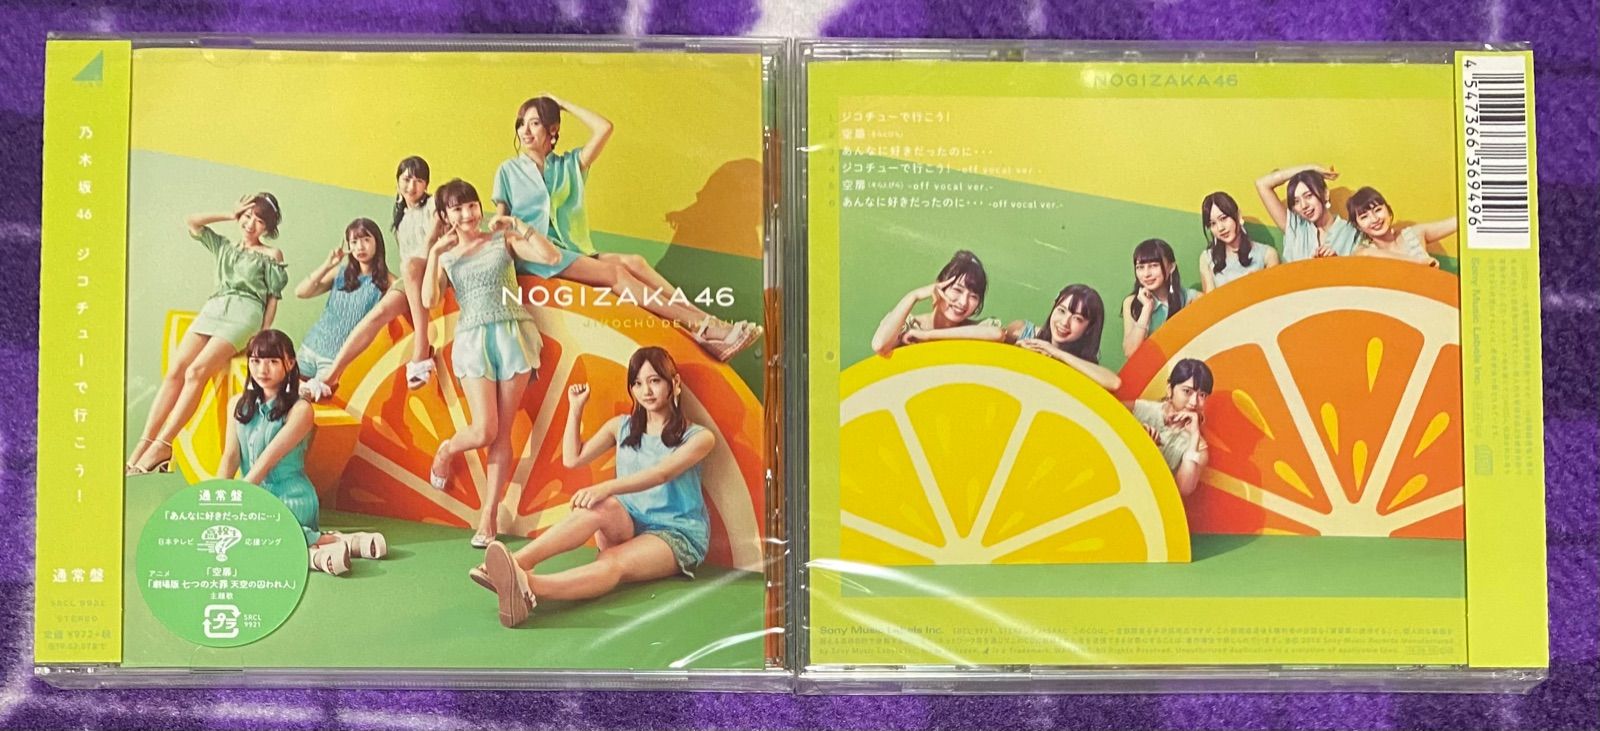 乃木坂46 通常版 CD - メルカリ